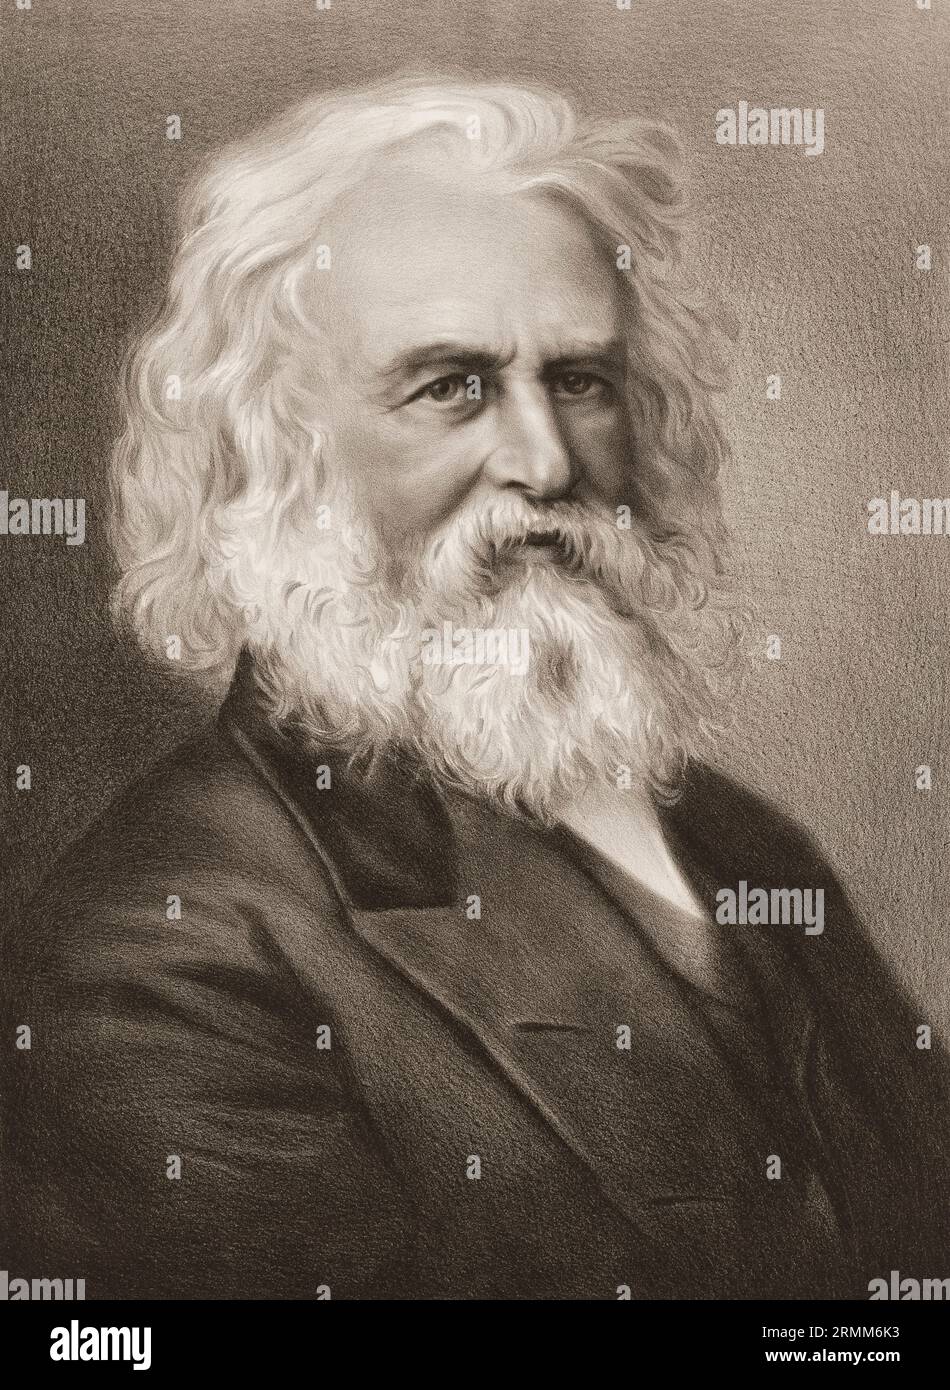 Henry Wadsworth Longfellow, 1807 – 1882, poète américain, édité numériquement Banque D'Images